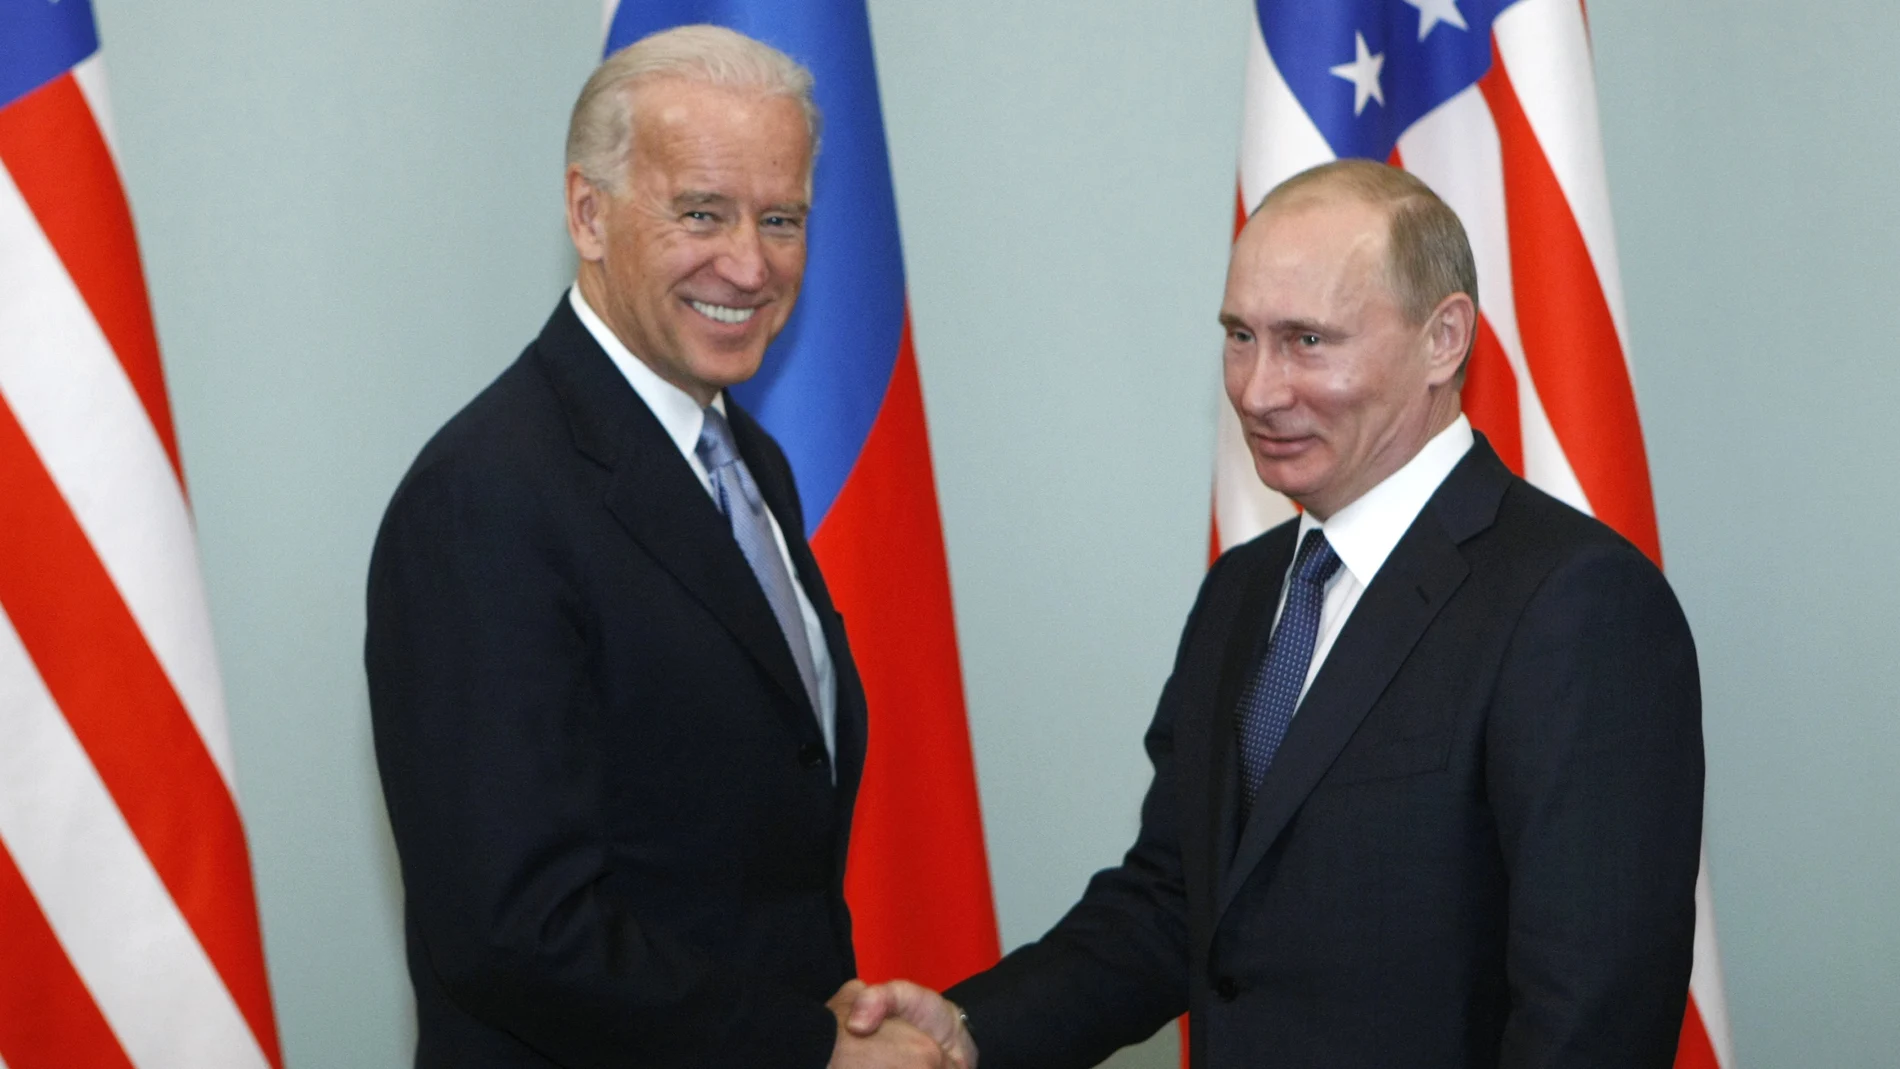 Foto de archivo, cuando Joe Biden era vicepresidente, en un encuentro con el líder ruso Vladimir Putin en 2011